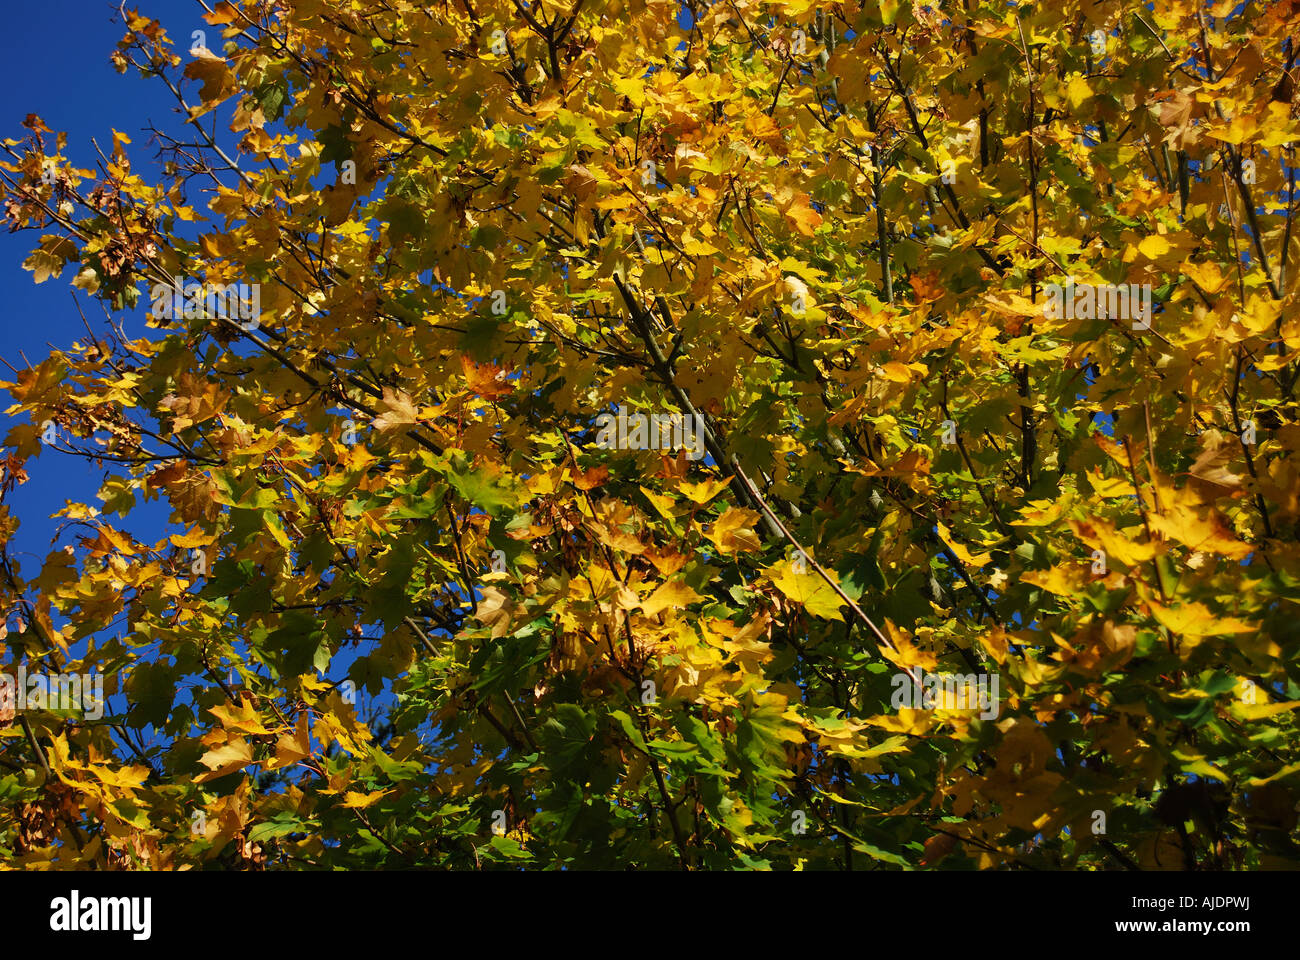 Les feuilles d'automne sur l'arbre, New Forest, Hampshire, Angleterre, Royaume-Uni Banque D'Images